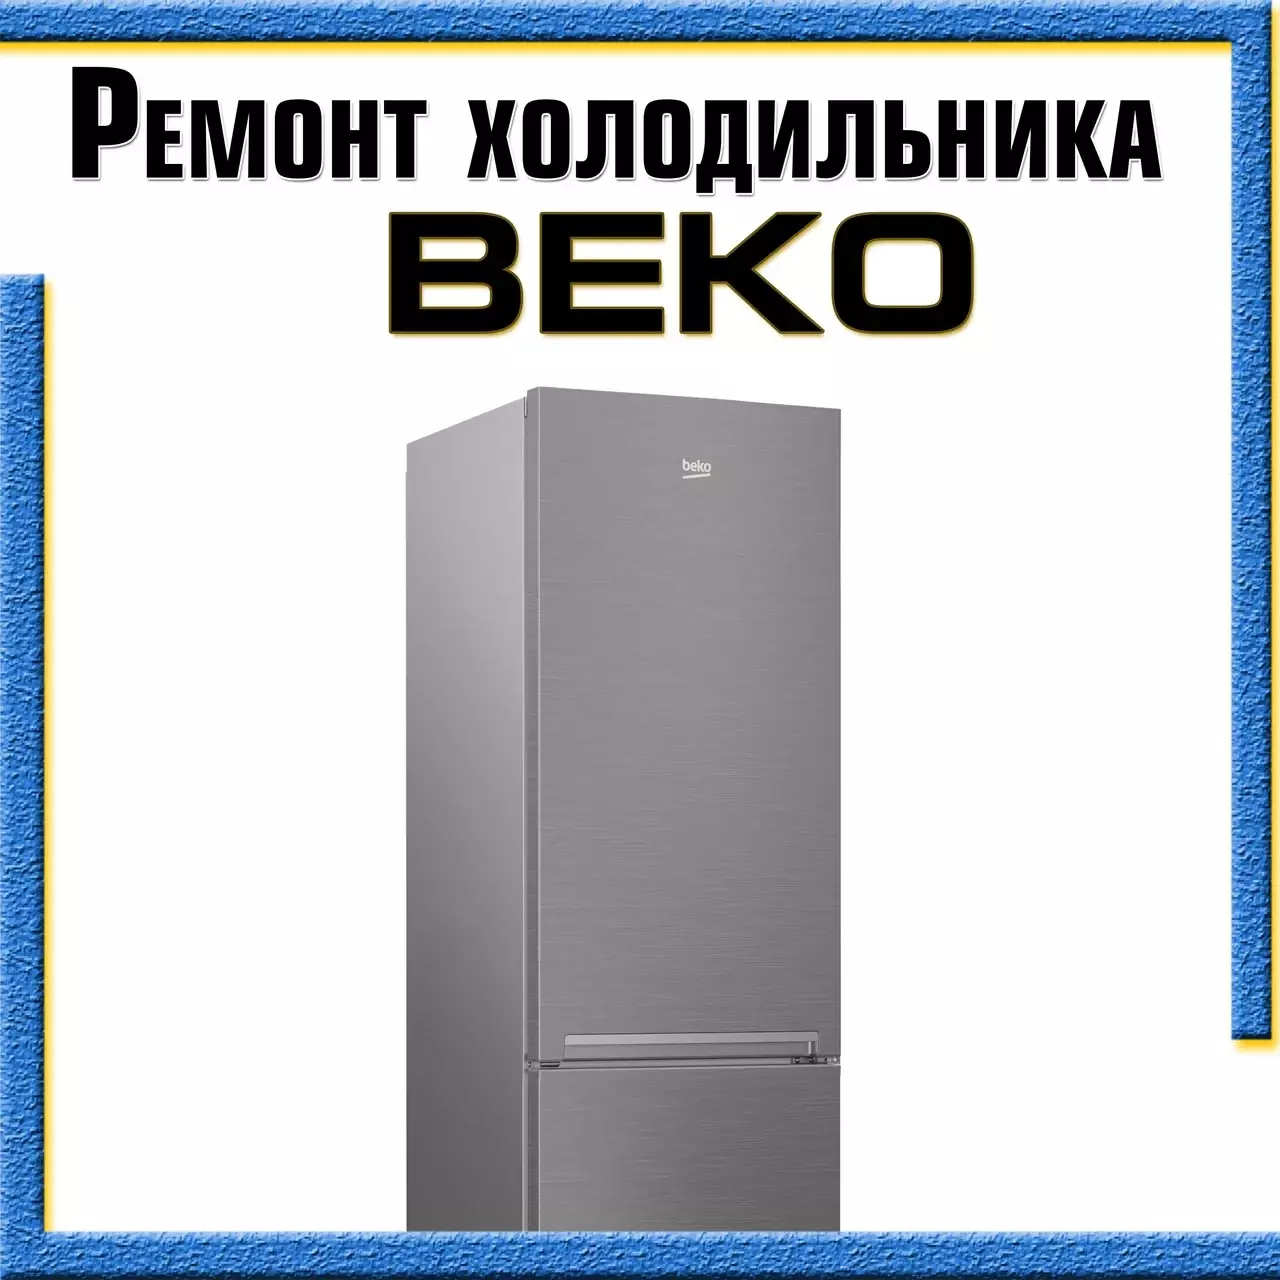 Ремонт холодильников Beko с выездом на дом